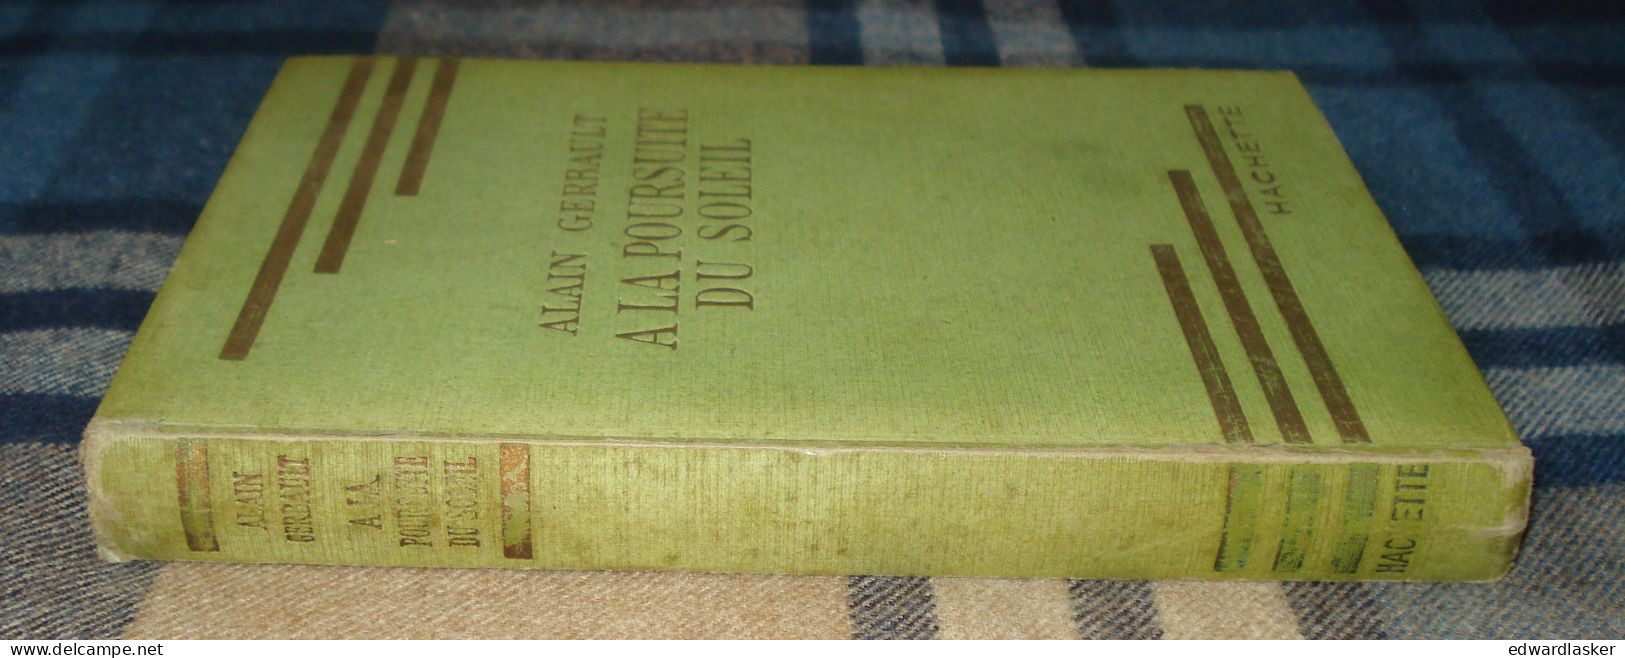 BIBLIOTHEQUE VERTE : A la poursuite du soleil /Alain Gerbault - sans jaquette - 1953 - Paul Durand